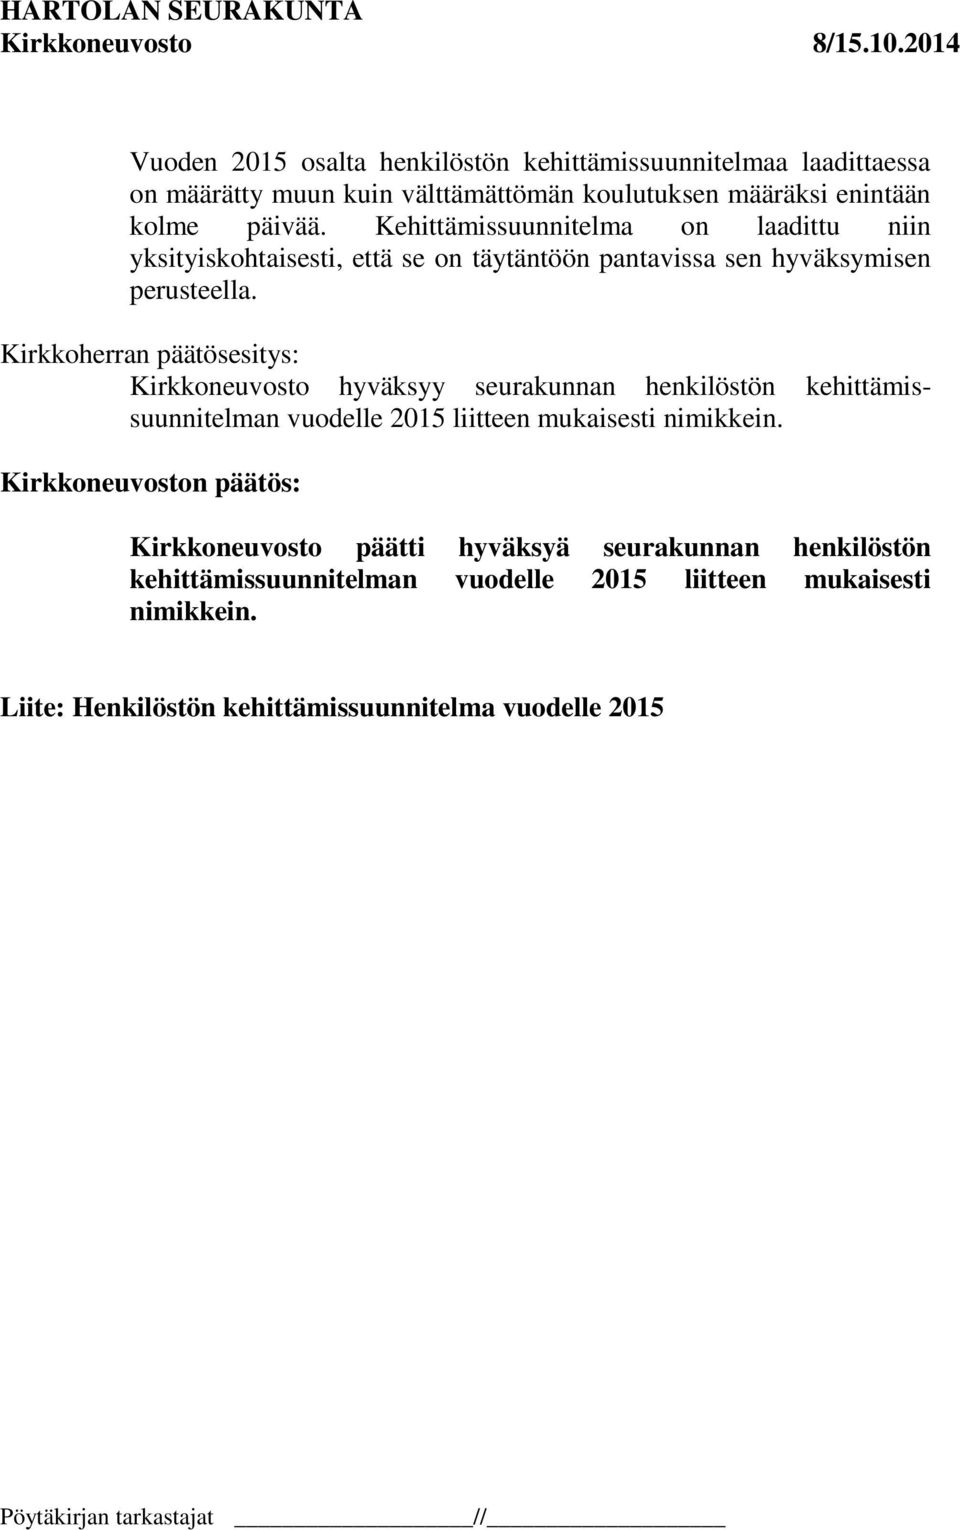 Kirkkoherran päätösesitys: Kirkkoneuvosto hyväksyy seurakunnan henkilöstön kehittämissuunnitelman vuodelle 2015 liitteen mukaisesti nimikkein.